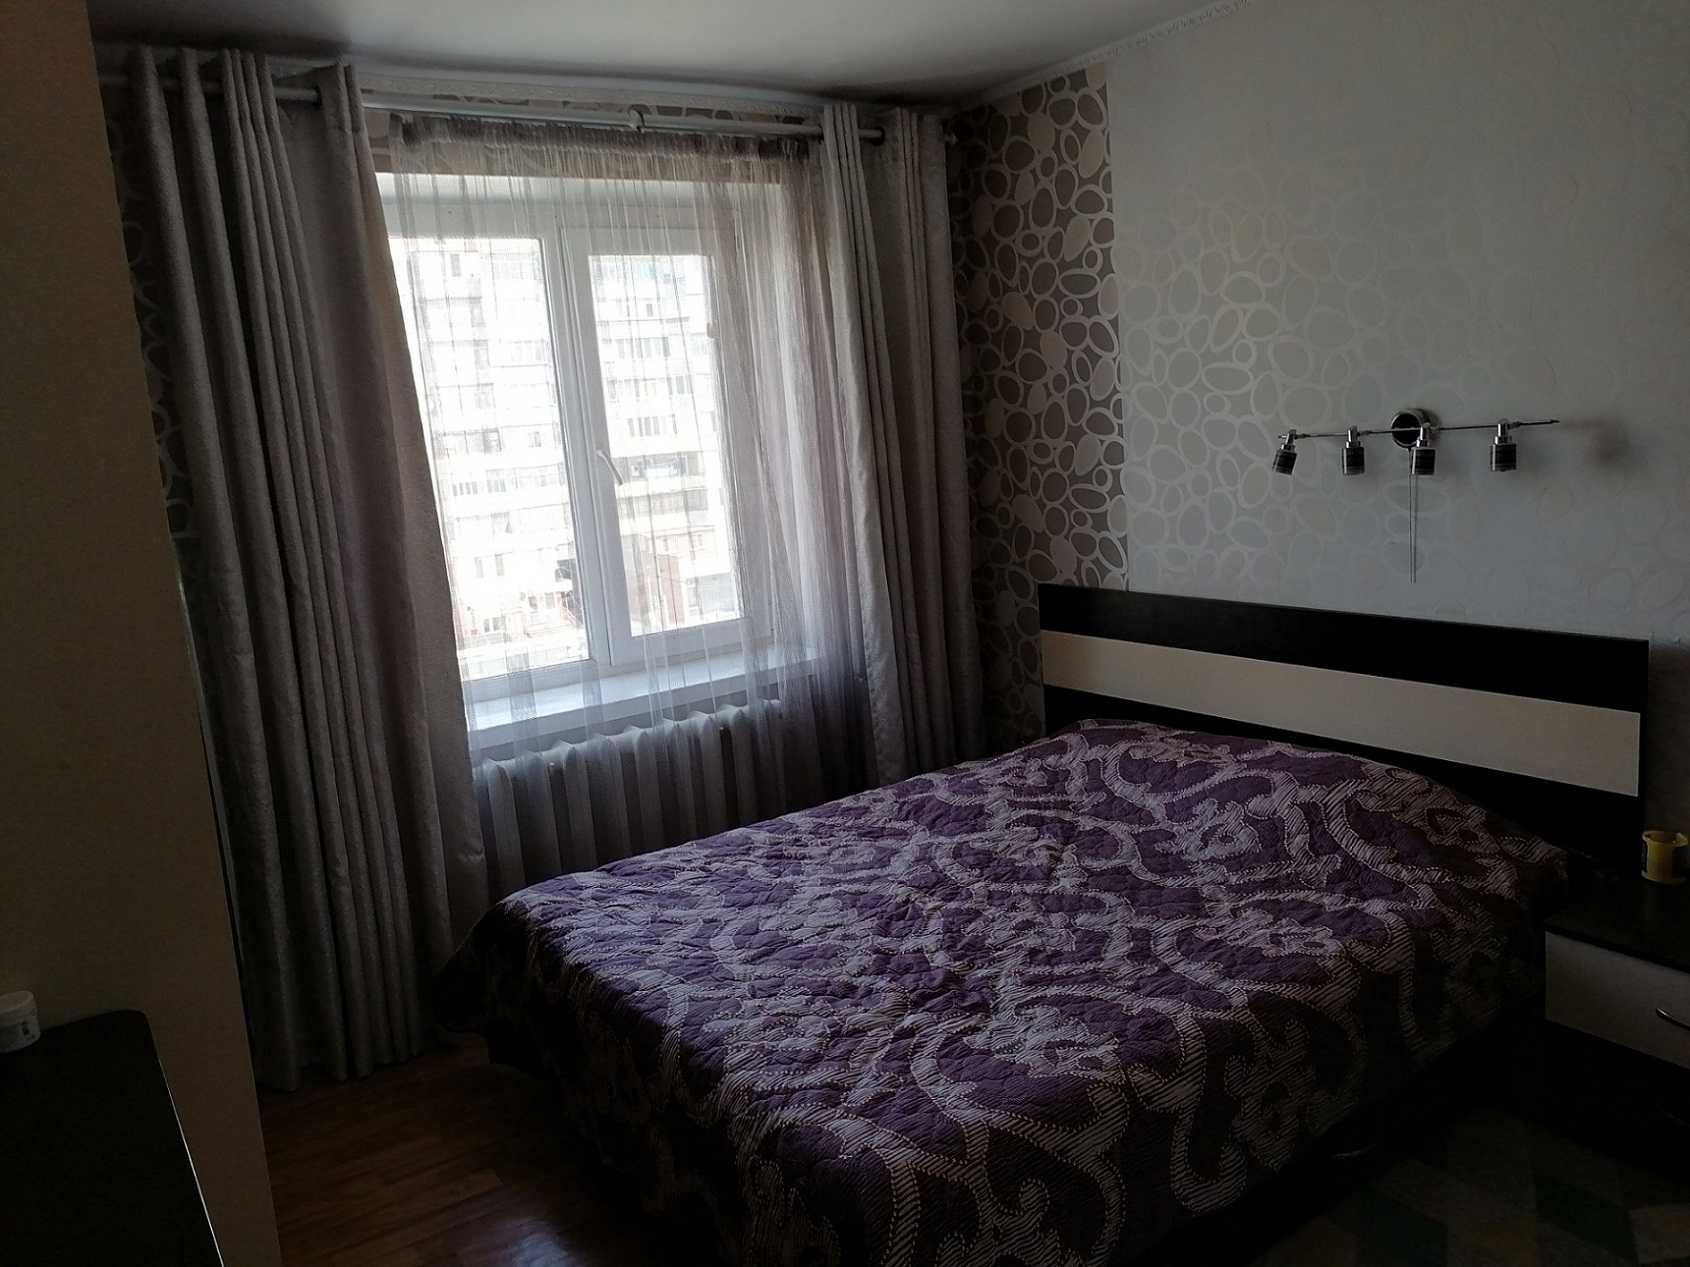 продам 3-комнатную квартиру в Таврическом районе